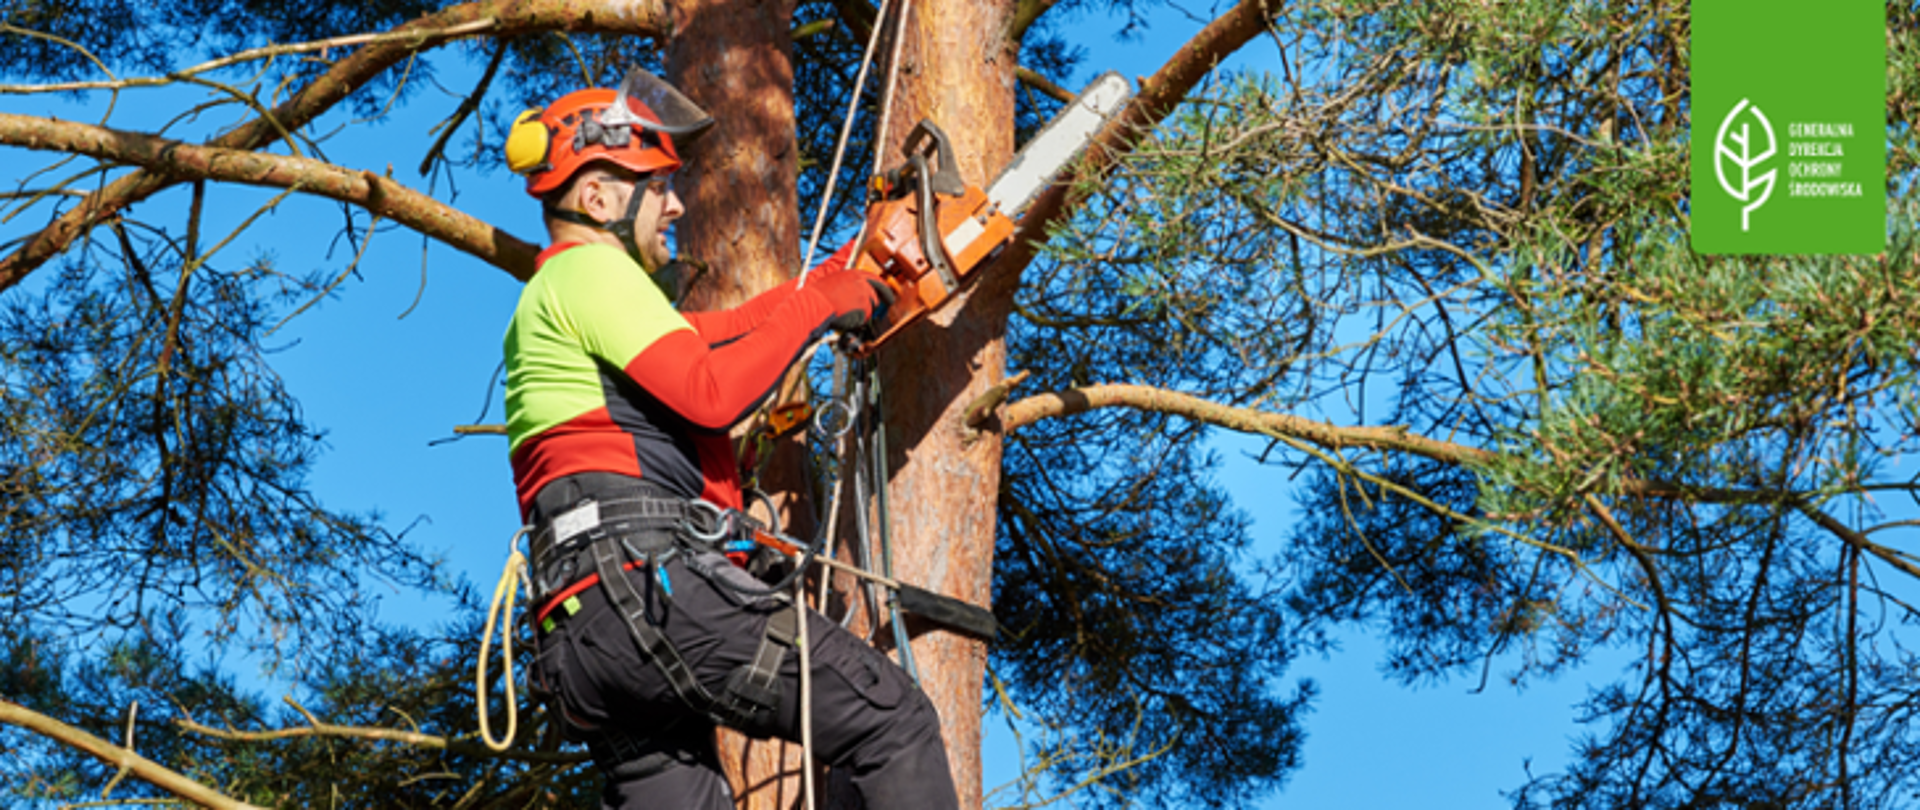 Mężczyzna w kasku i z piłą mechaniczną przycina gałęzie na drzewie. W prawym górnym rogu logo Generalnej Dyrekcji Ochrony Środowiska (biały liść).